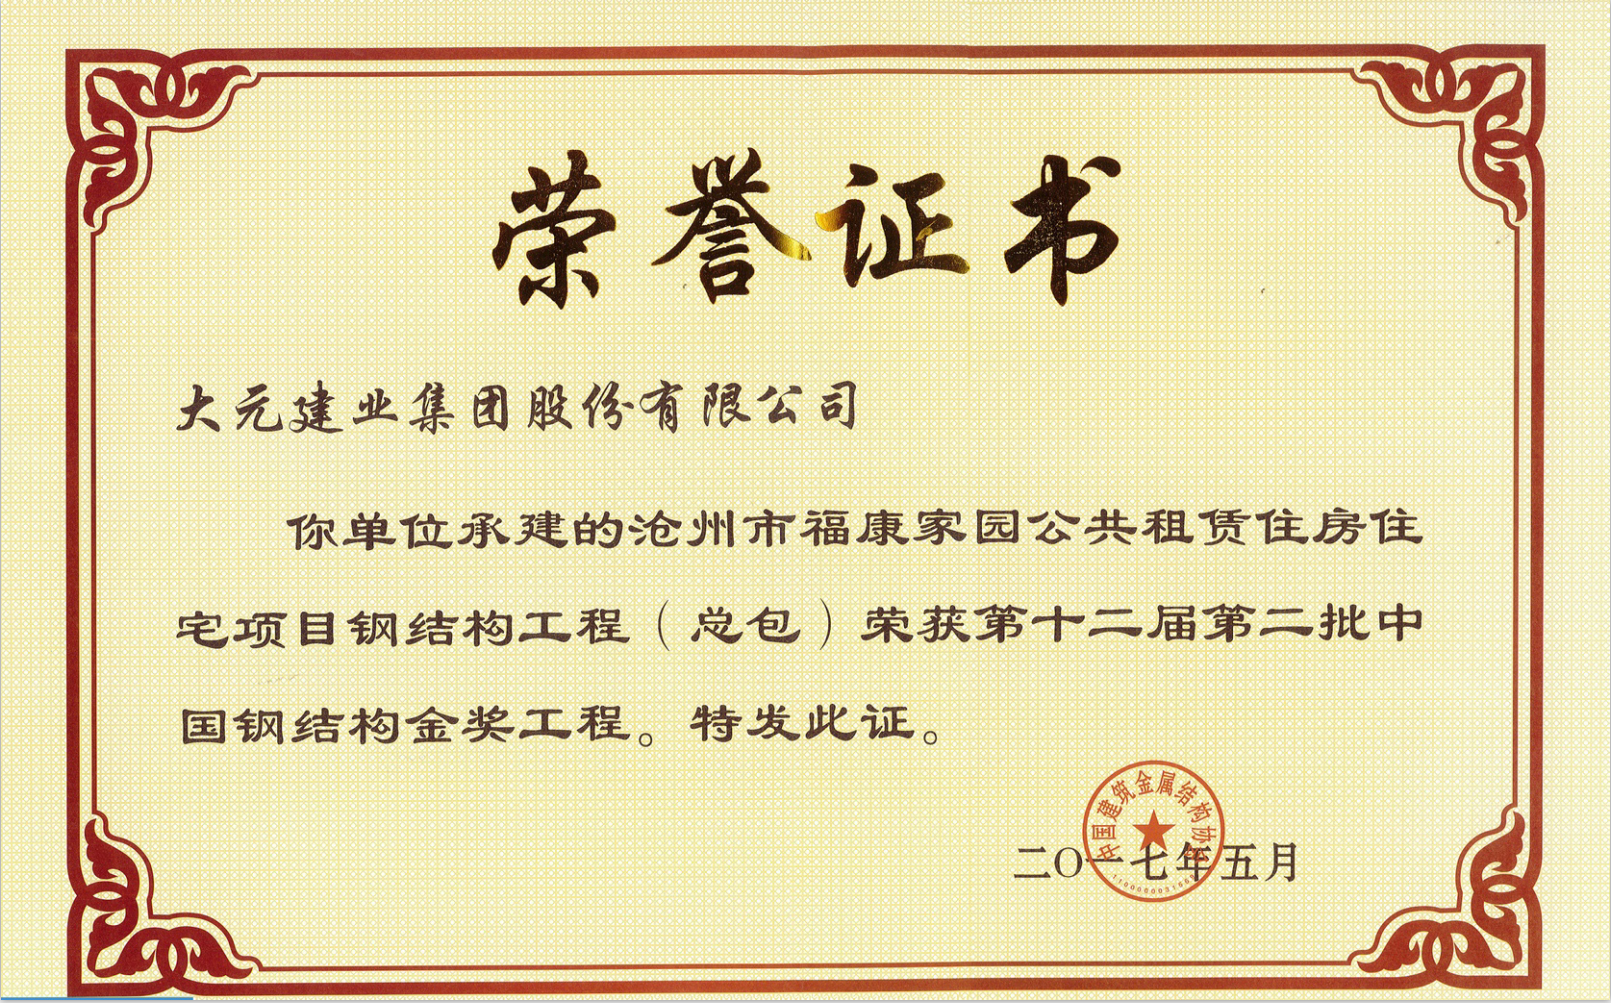 大元集团荣获“中国钢结构金奖”